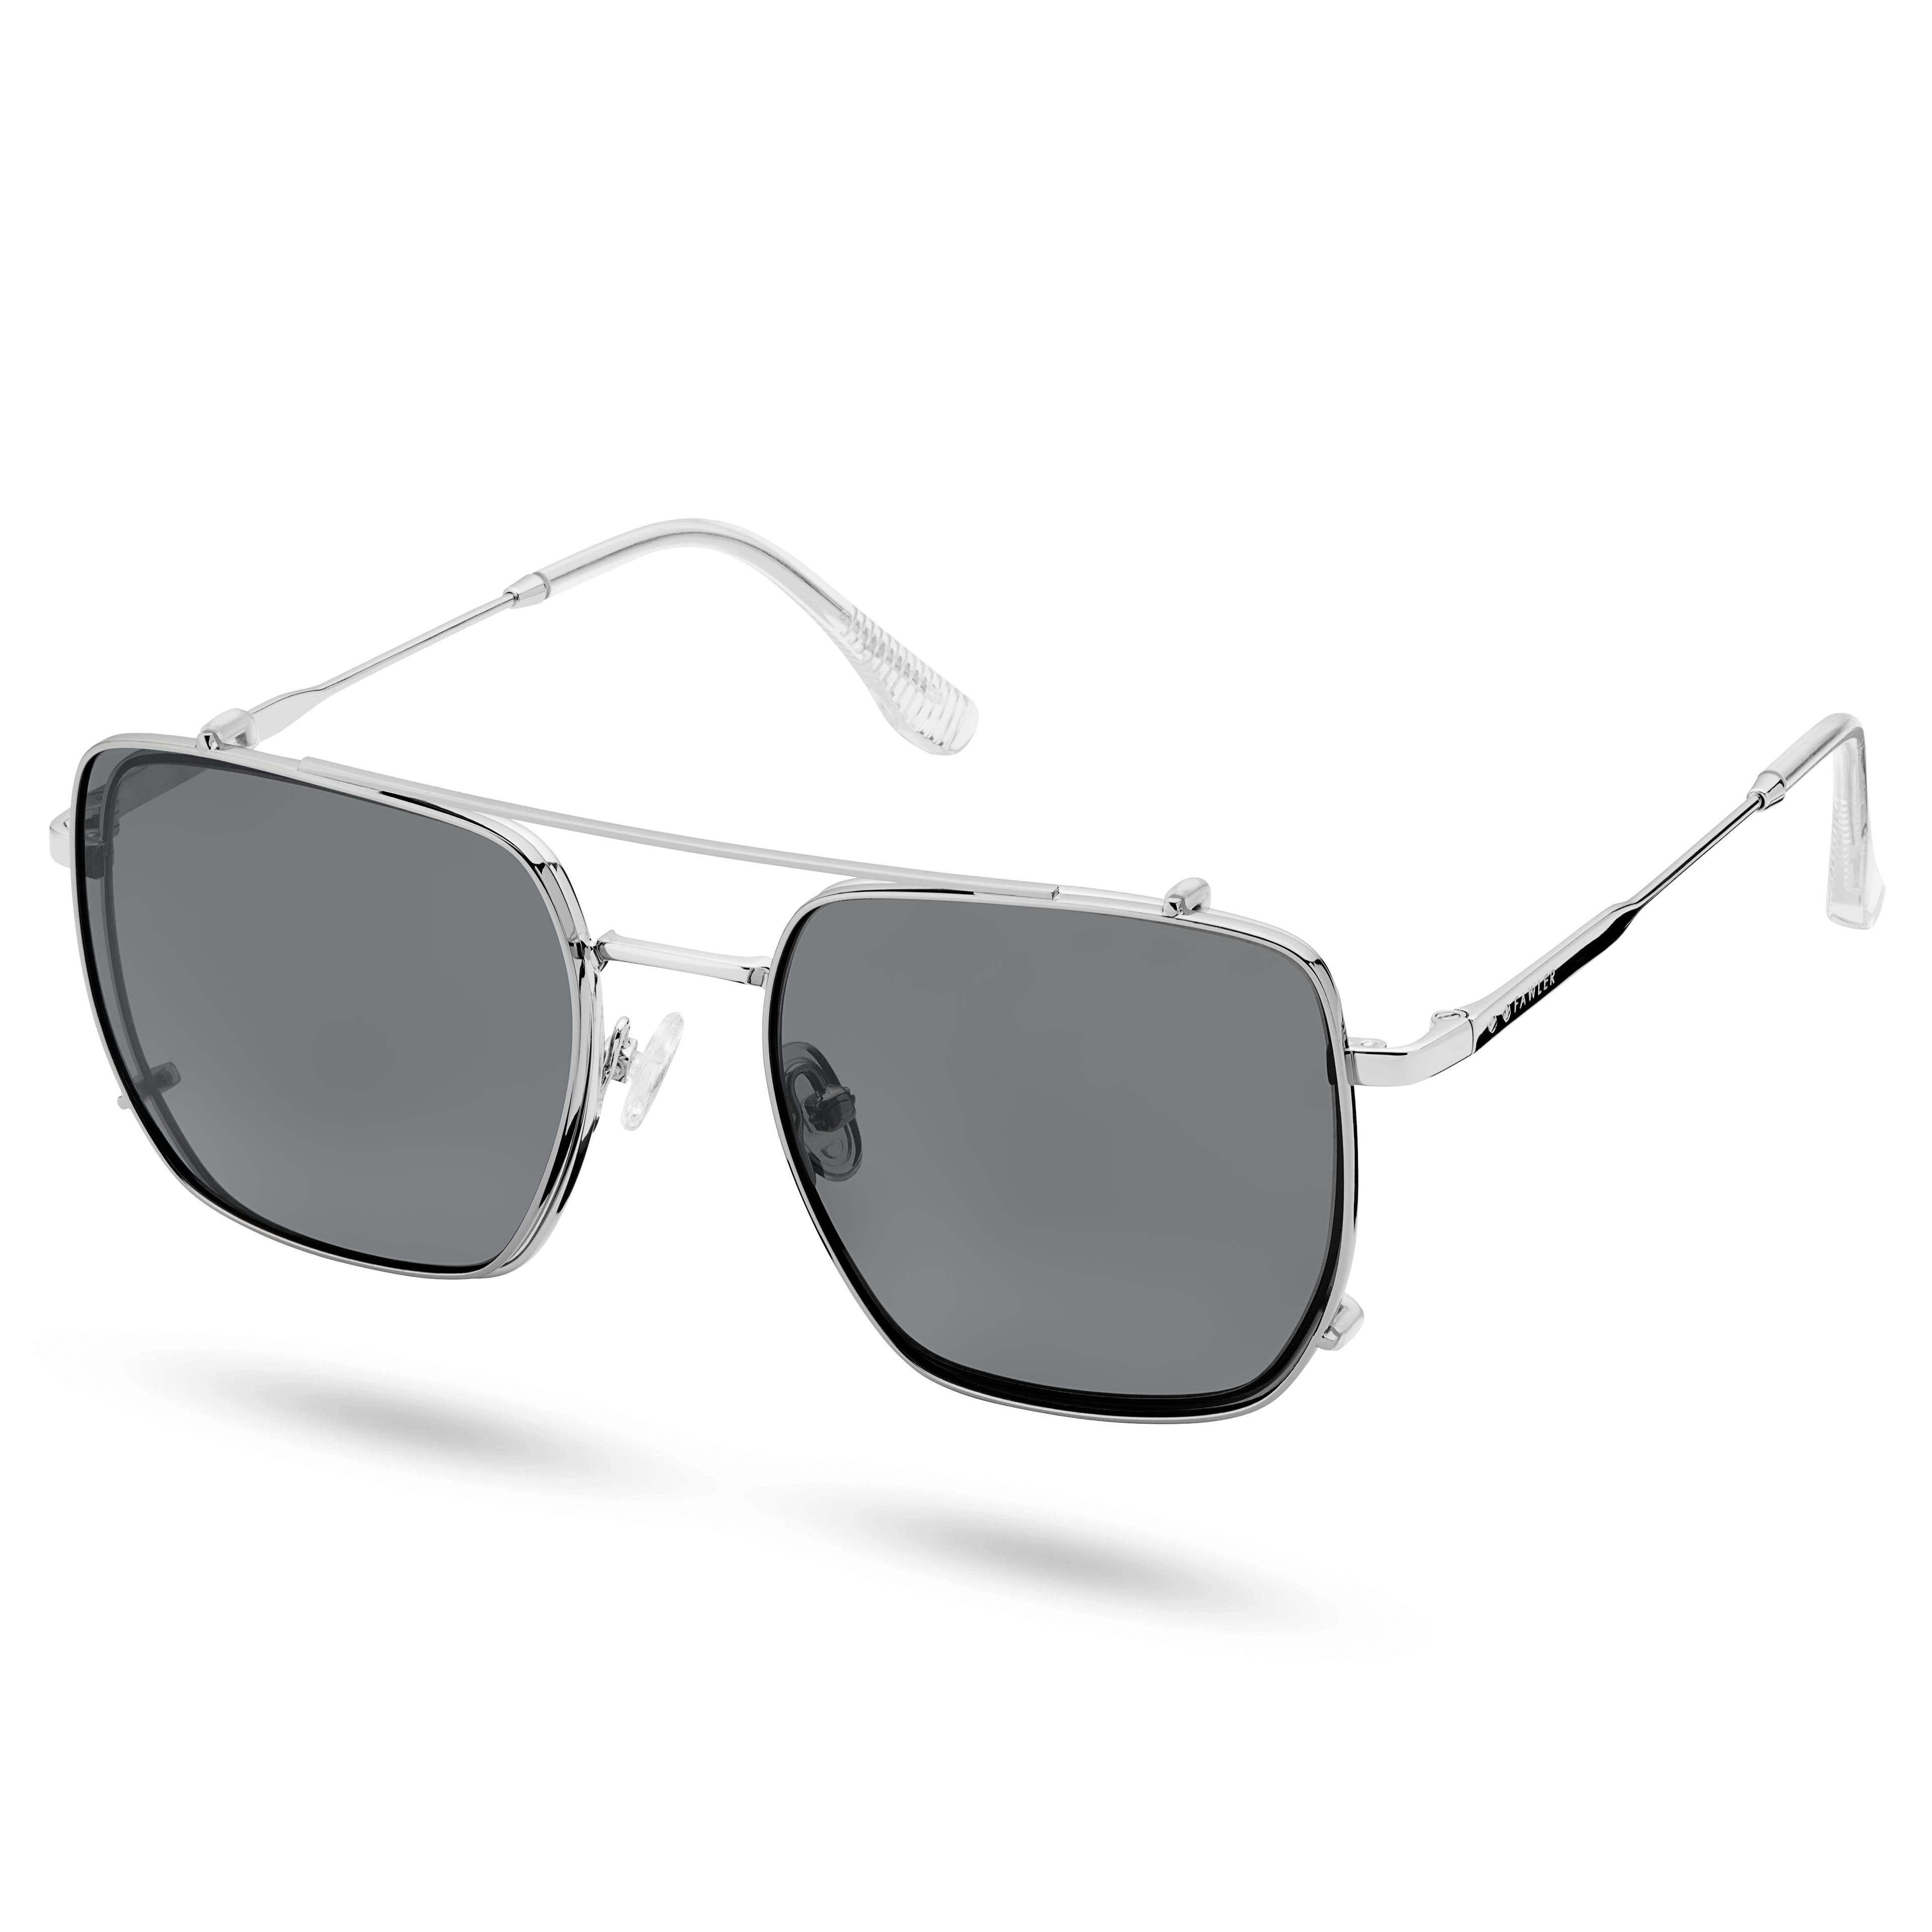 Ocelové brýle s čirými čočkami blokujícími modré světlo s nasazovacími polarizačními čočkami